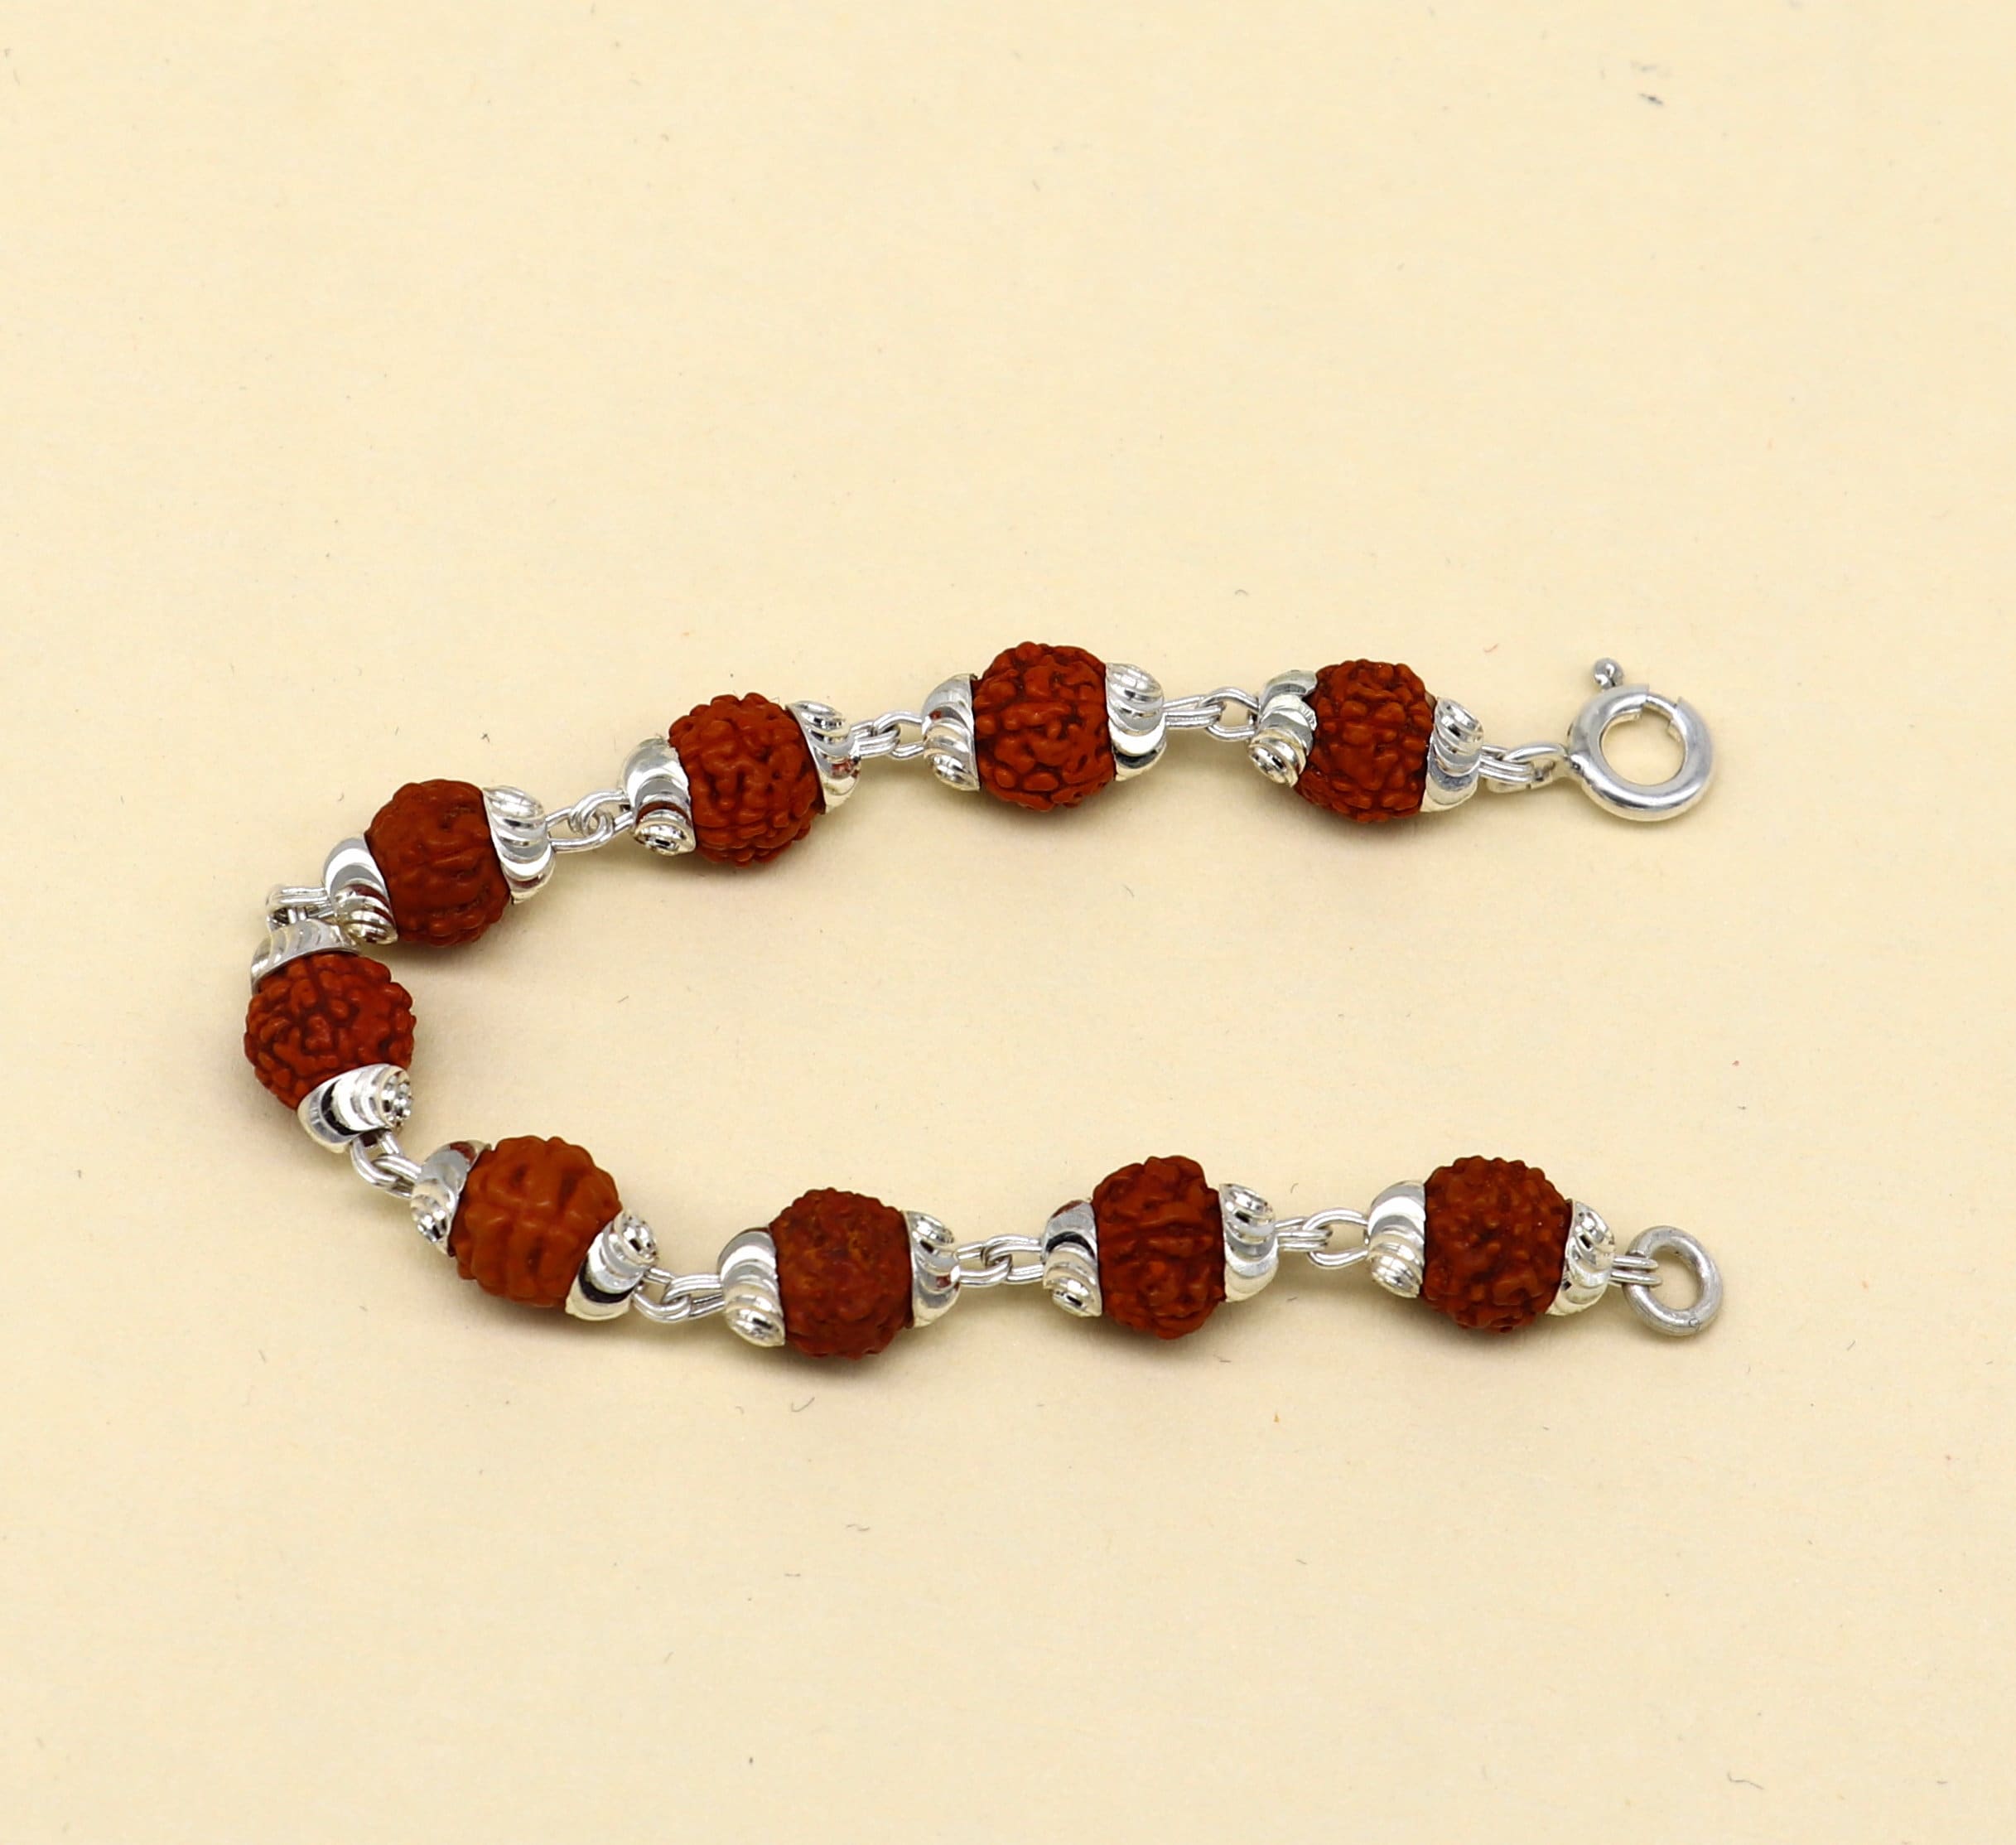 Rudraksh beads Rudraksha bracelet 6 mm w/ golden caps, hand knotted  shamballa bracelet, Adjustable Healing Bracelet - Blessed & Energize